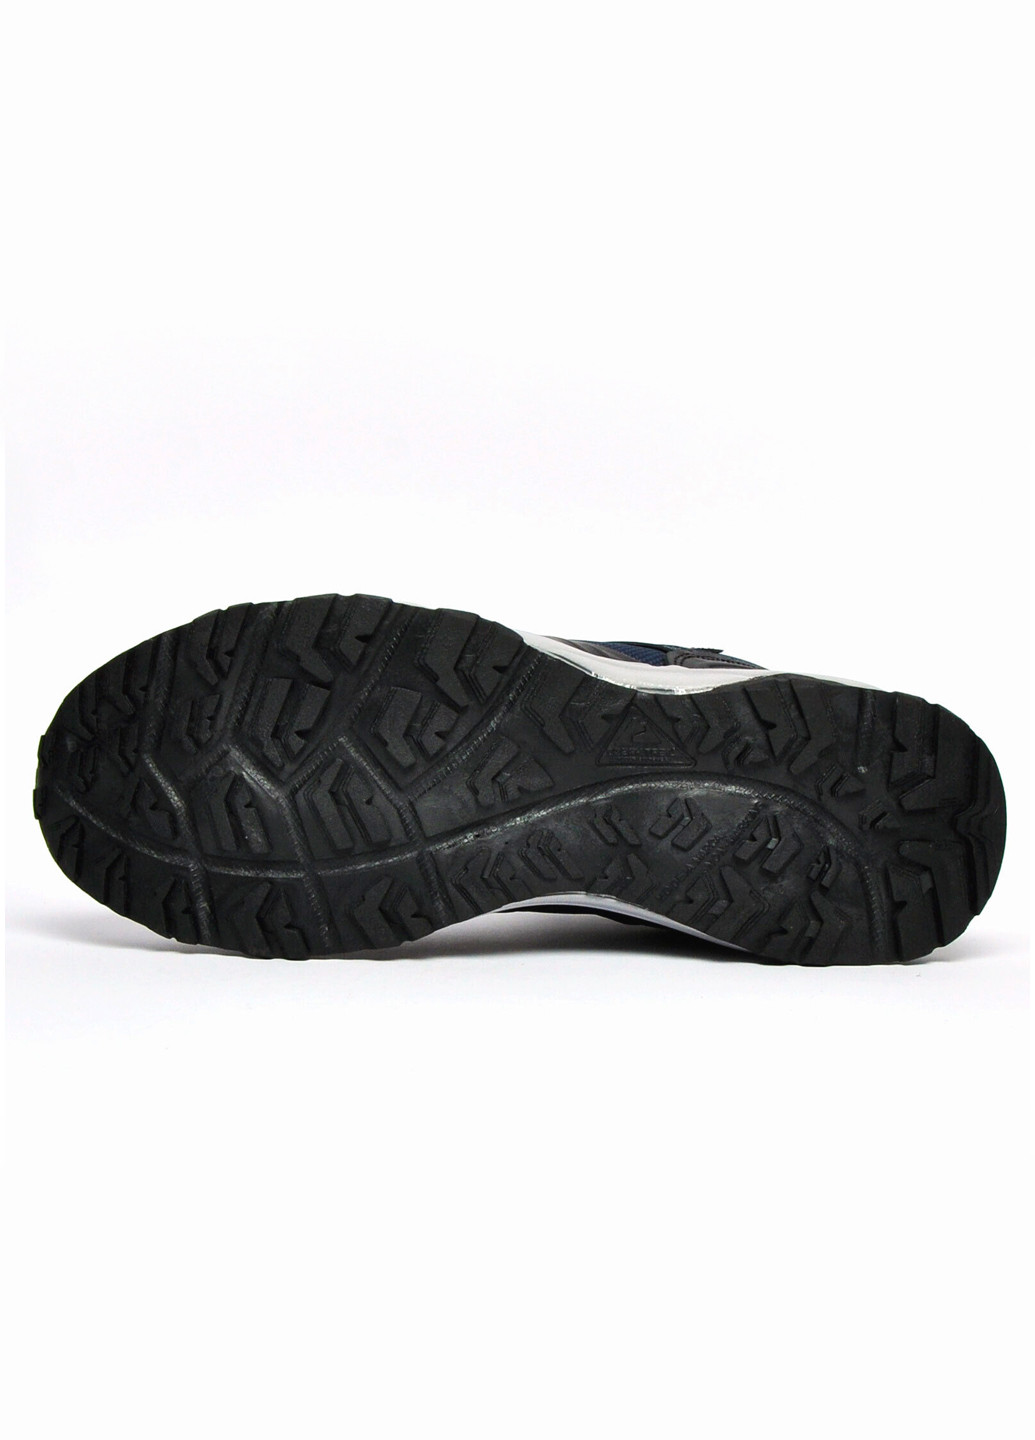 Черные мужские туристические повседневные ботинки Ozark Trail